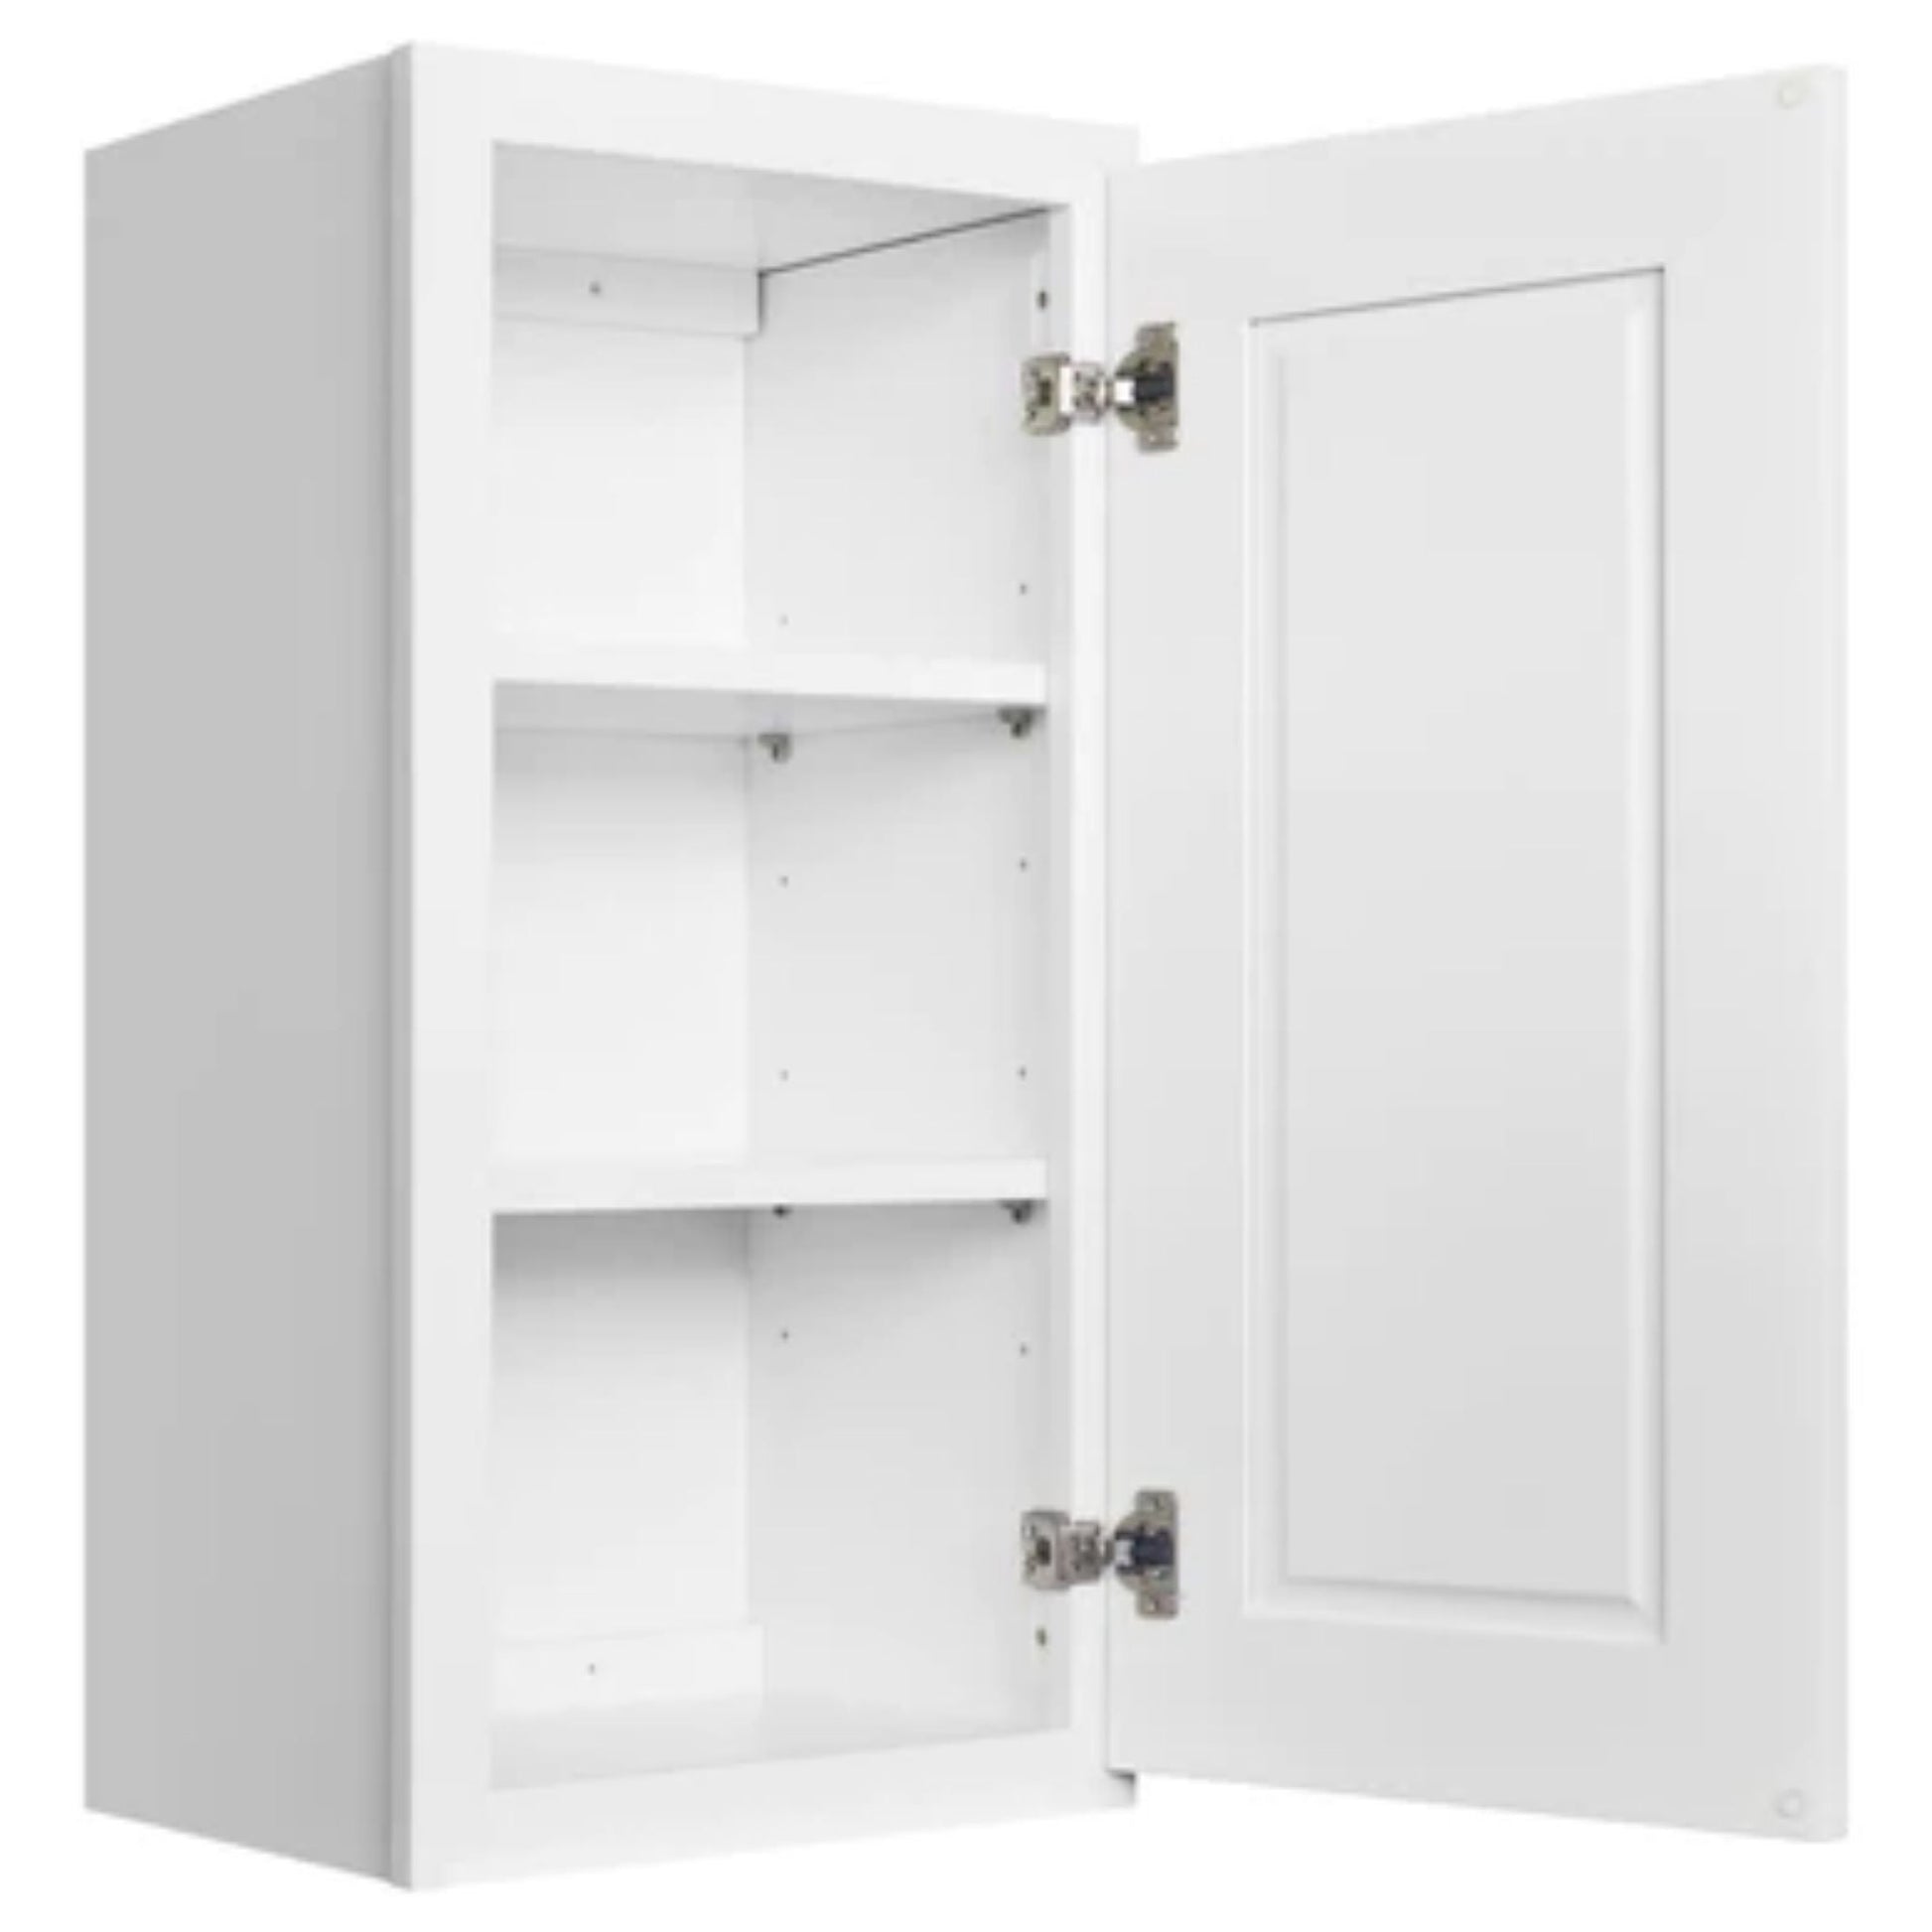 LessCare 33" x 18" x 12" Alpina White Wall Kitchen Cabinet - W3318